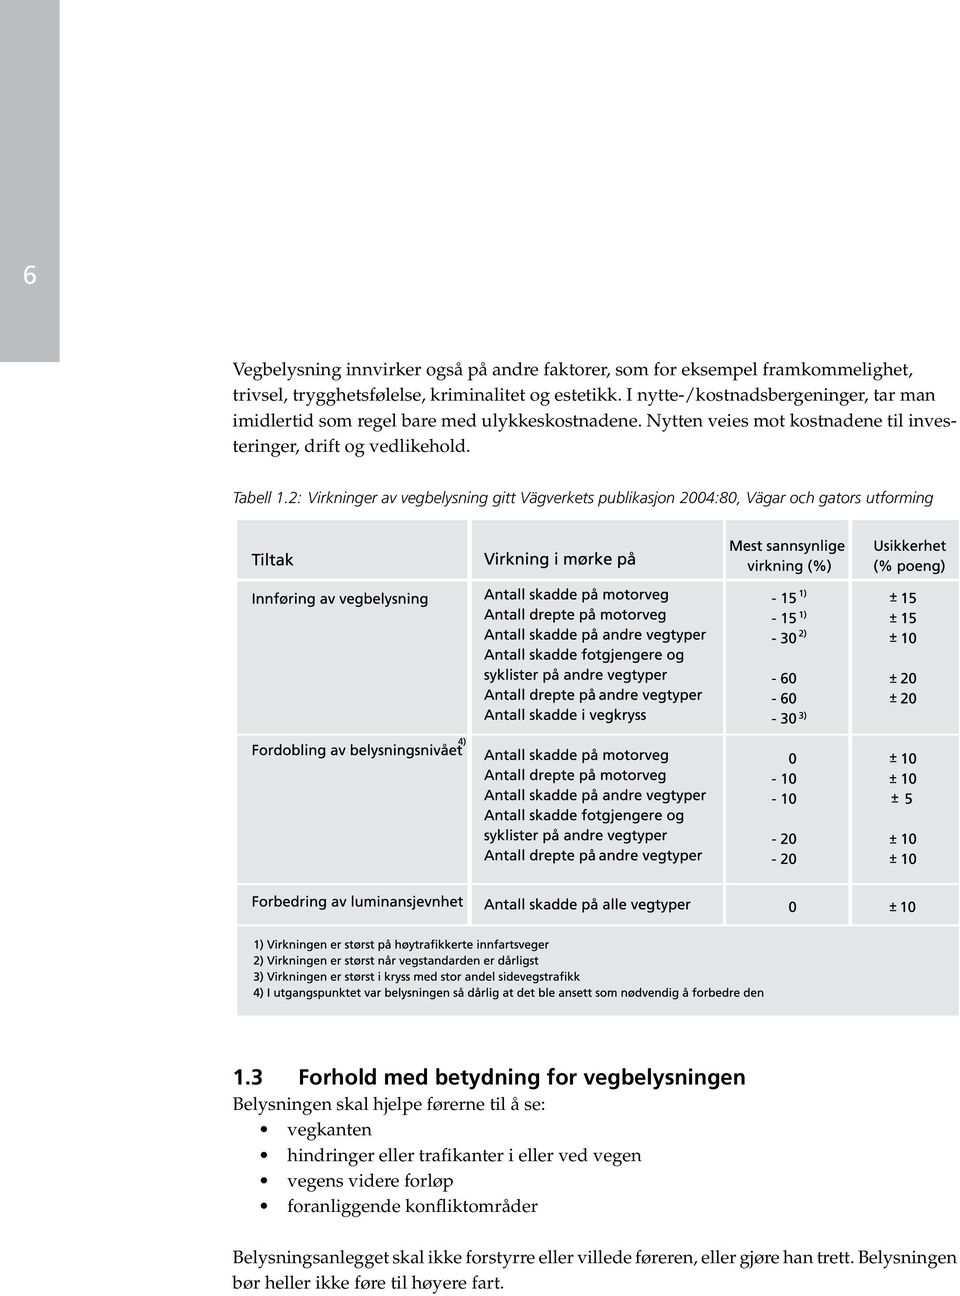 2: Virkninger av vegbelysning gitt Vägverkets publikasjon 2004:80, Vägar och gators utforming 1.